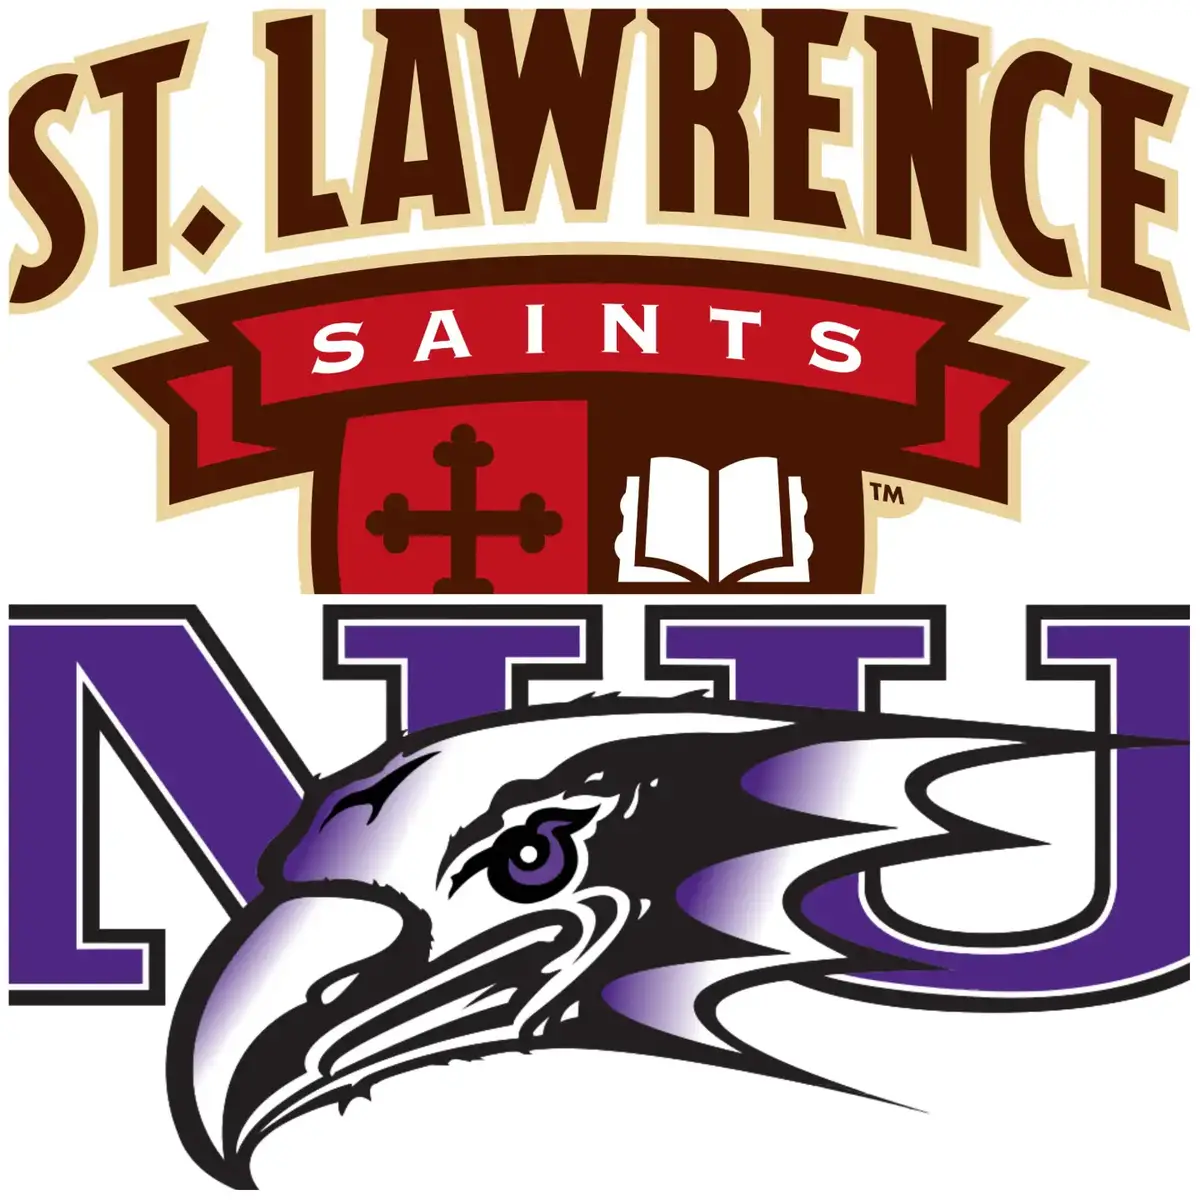 Pertandingan hoki putra St. Lawrence-Niagara yang dijadwalkan pada 19 November ditunda karena cuaca, dijadwalkan ulang pada 5 Januari 2023 – Hoki Perguruan Tinggi